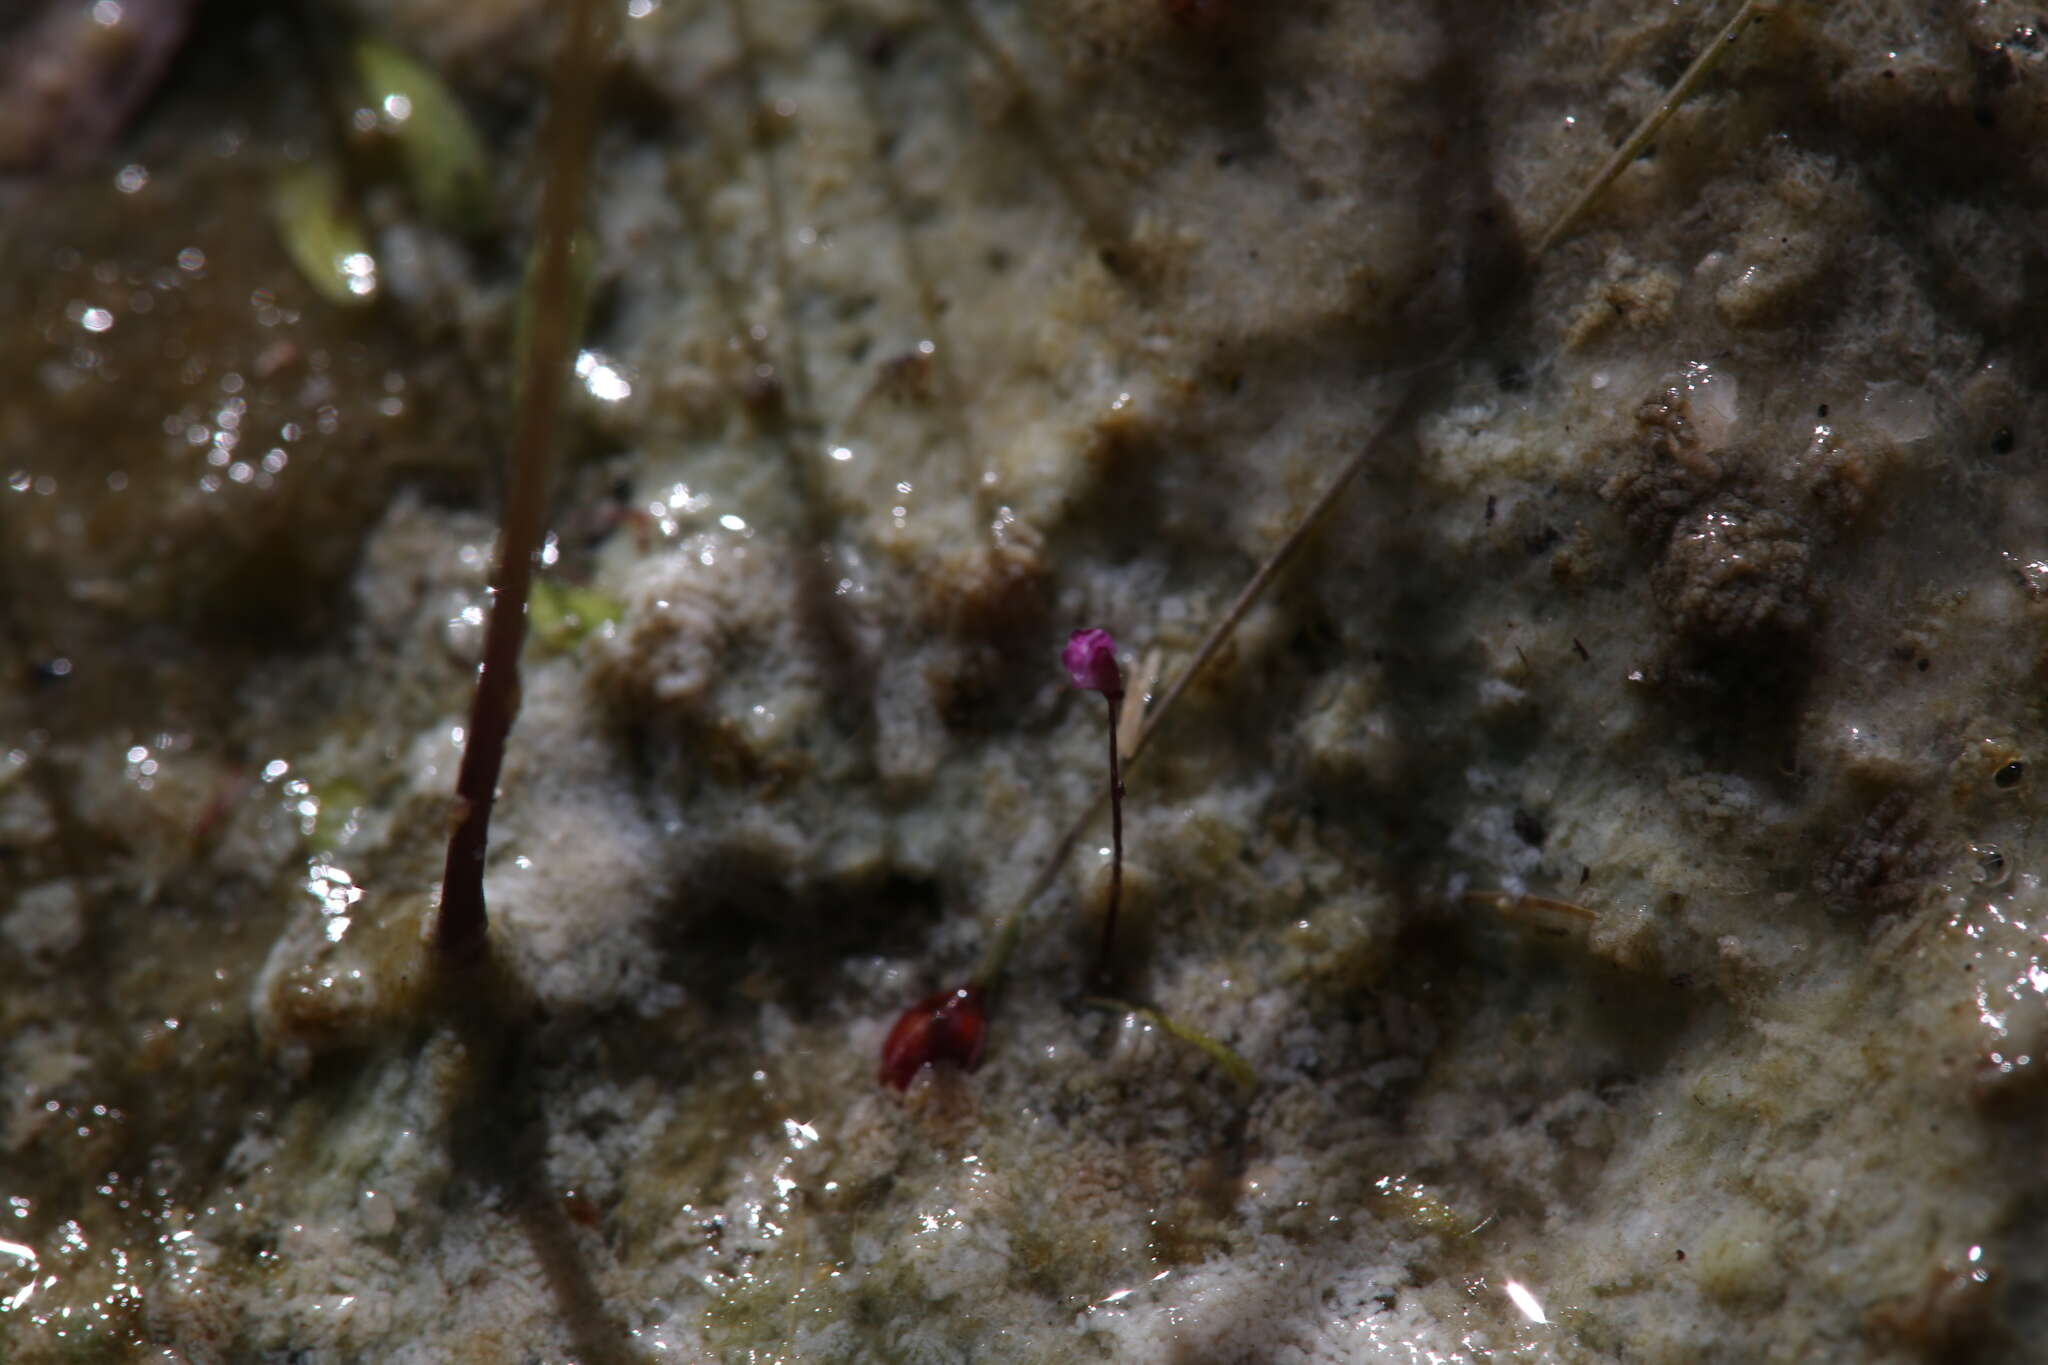 Image of Utricularia minutissima Vahl